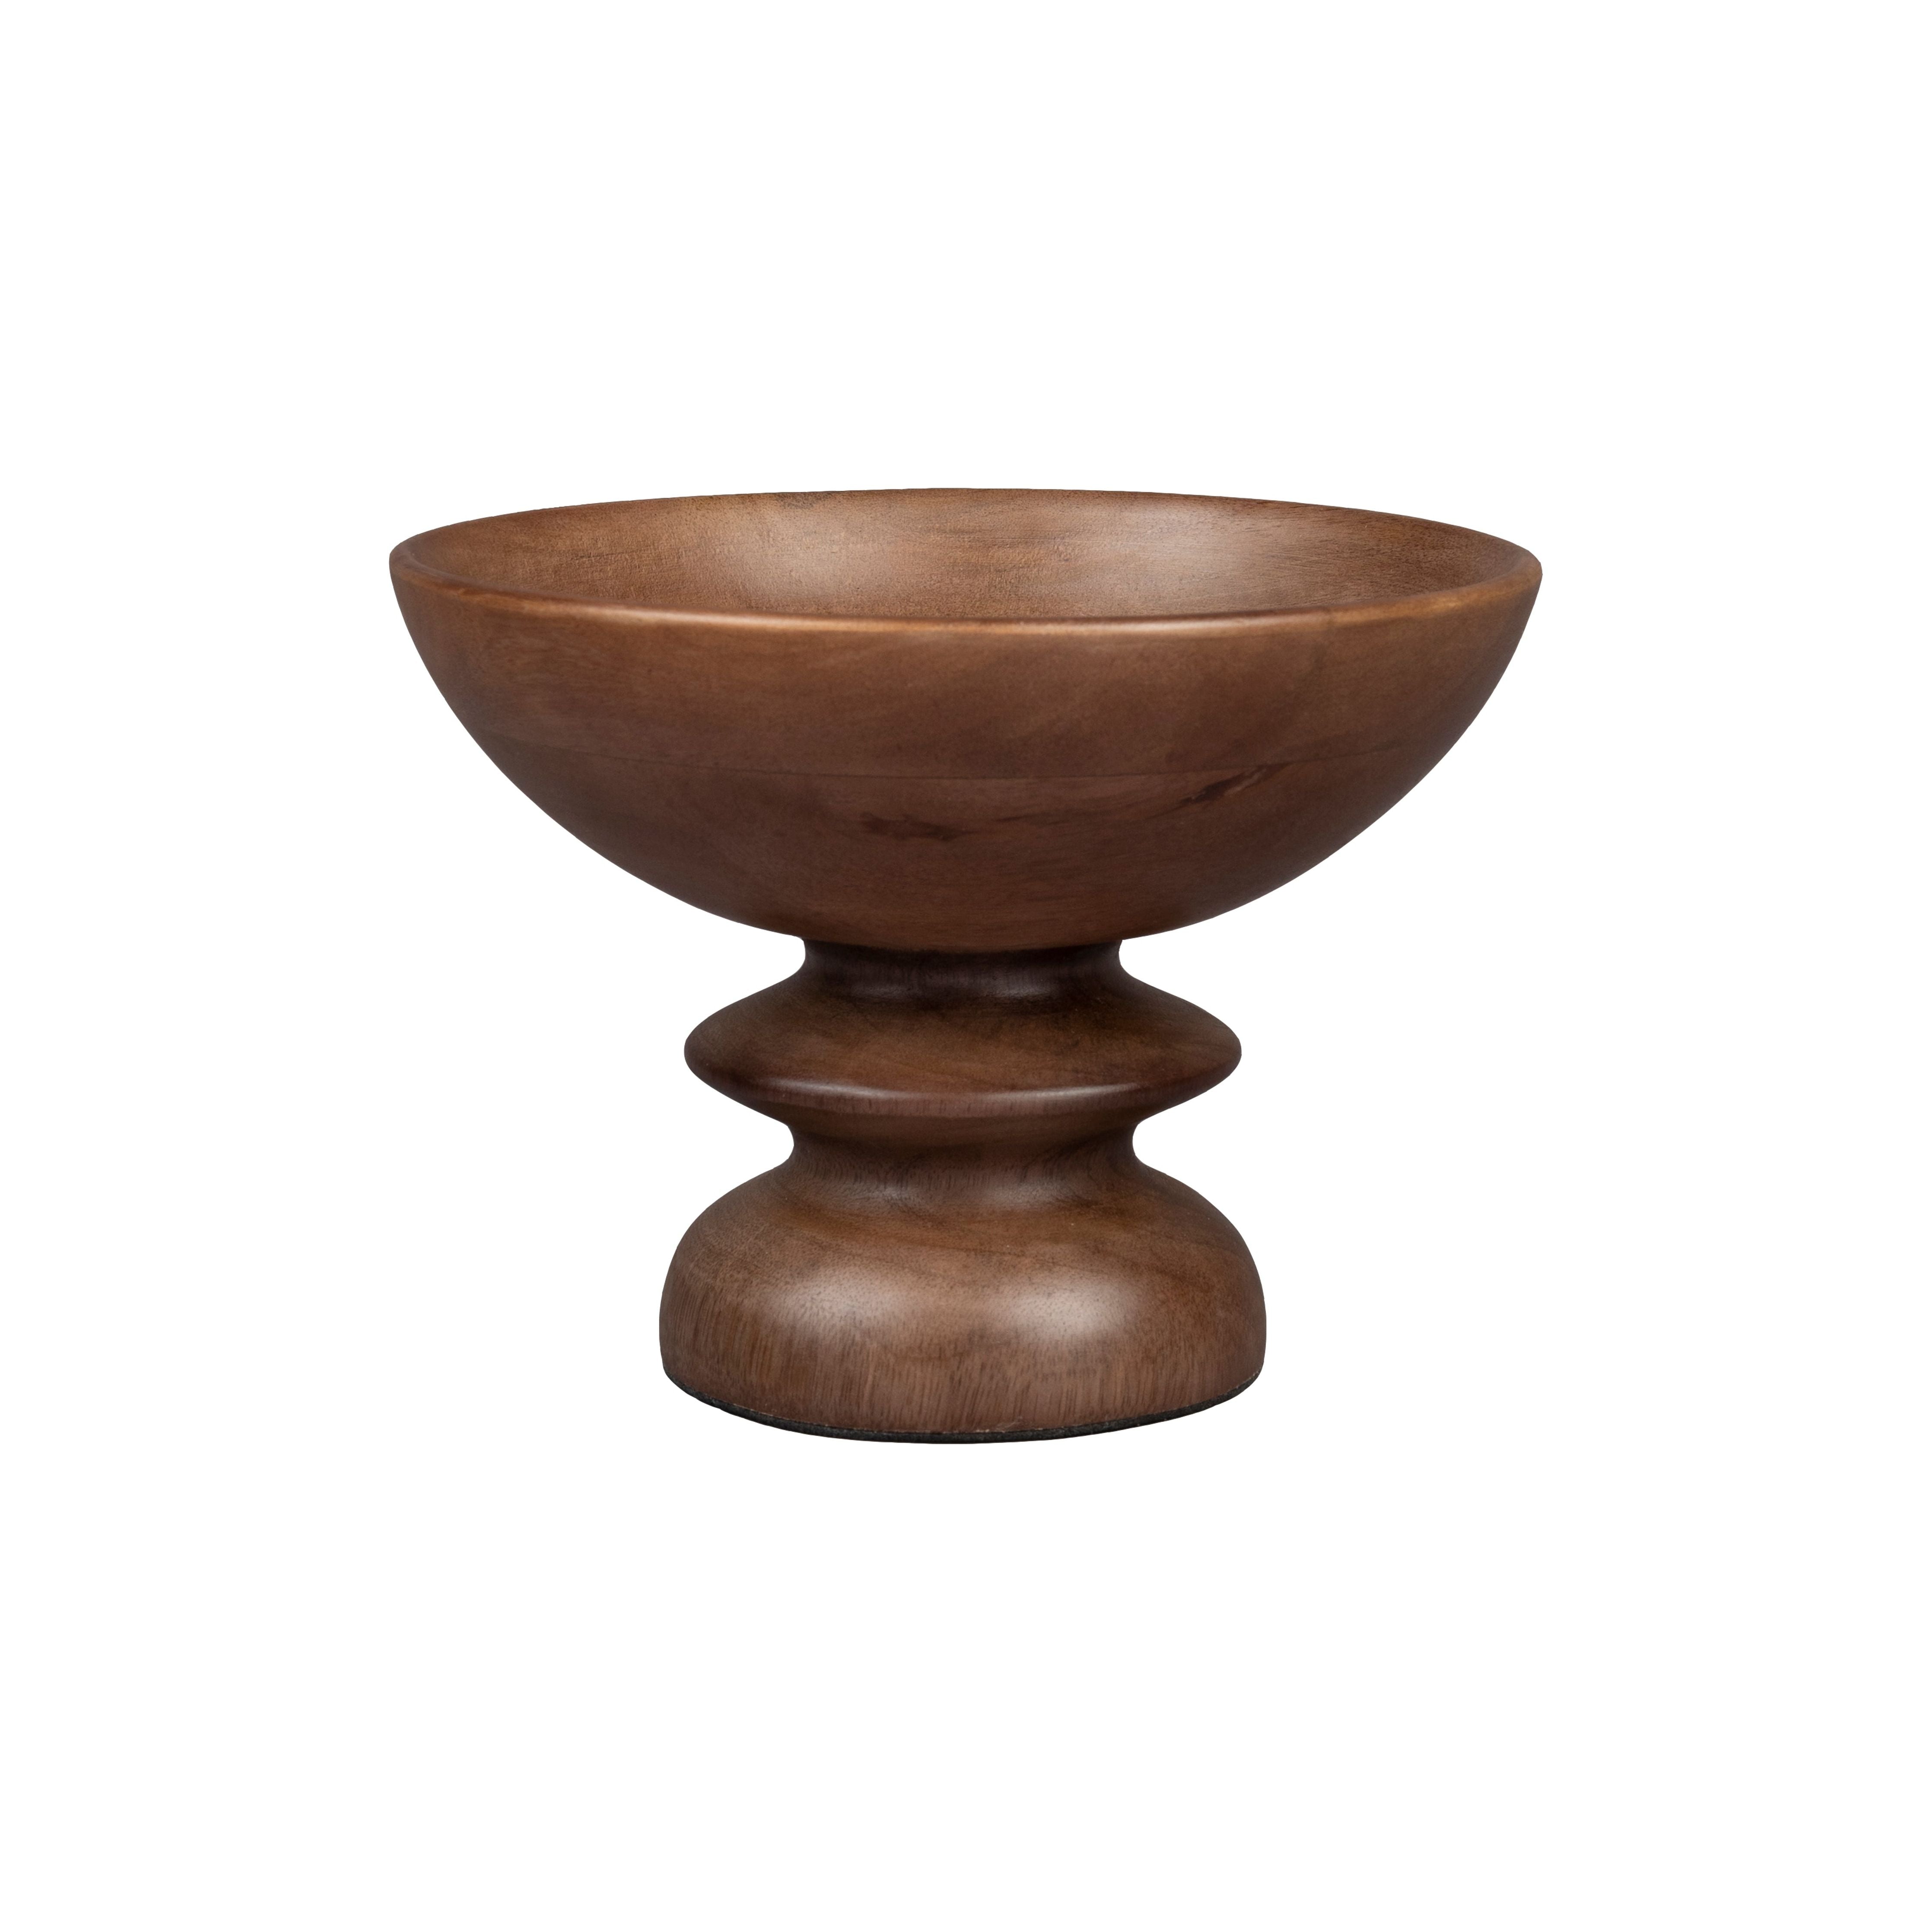 Wooden bowl gwen m